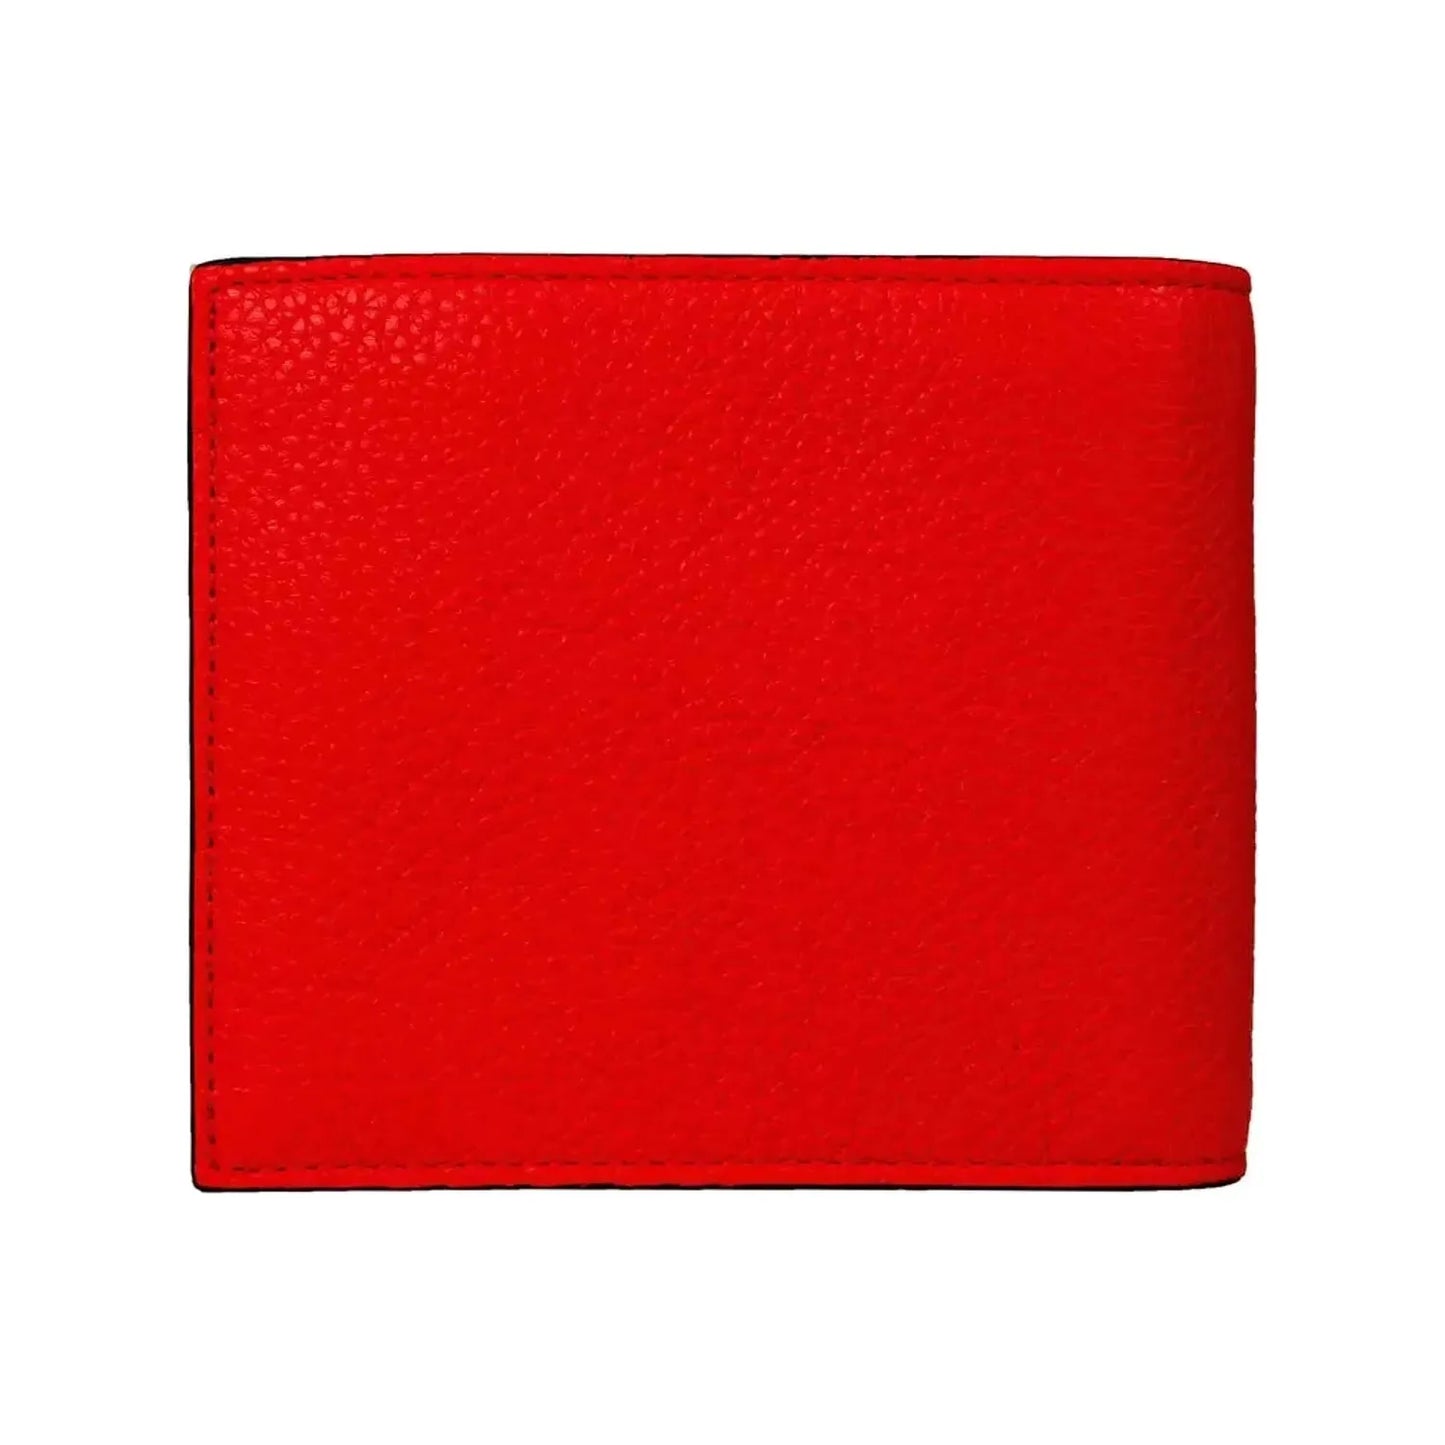 Neil Barrett Sleek Red Leather Men's Wallet red-wallet stock_product_image_21051_2114603000-24-ebdd02af-414.webp